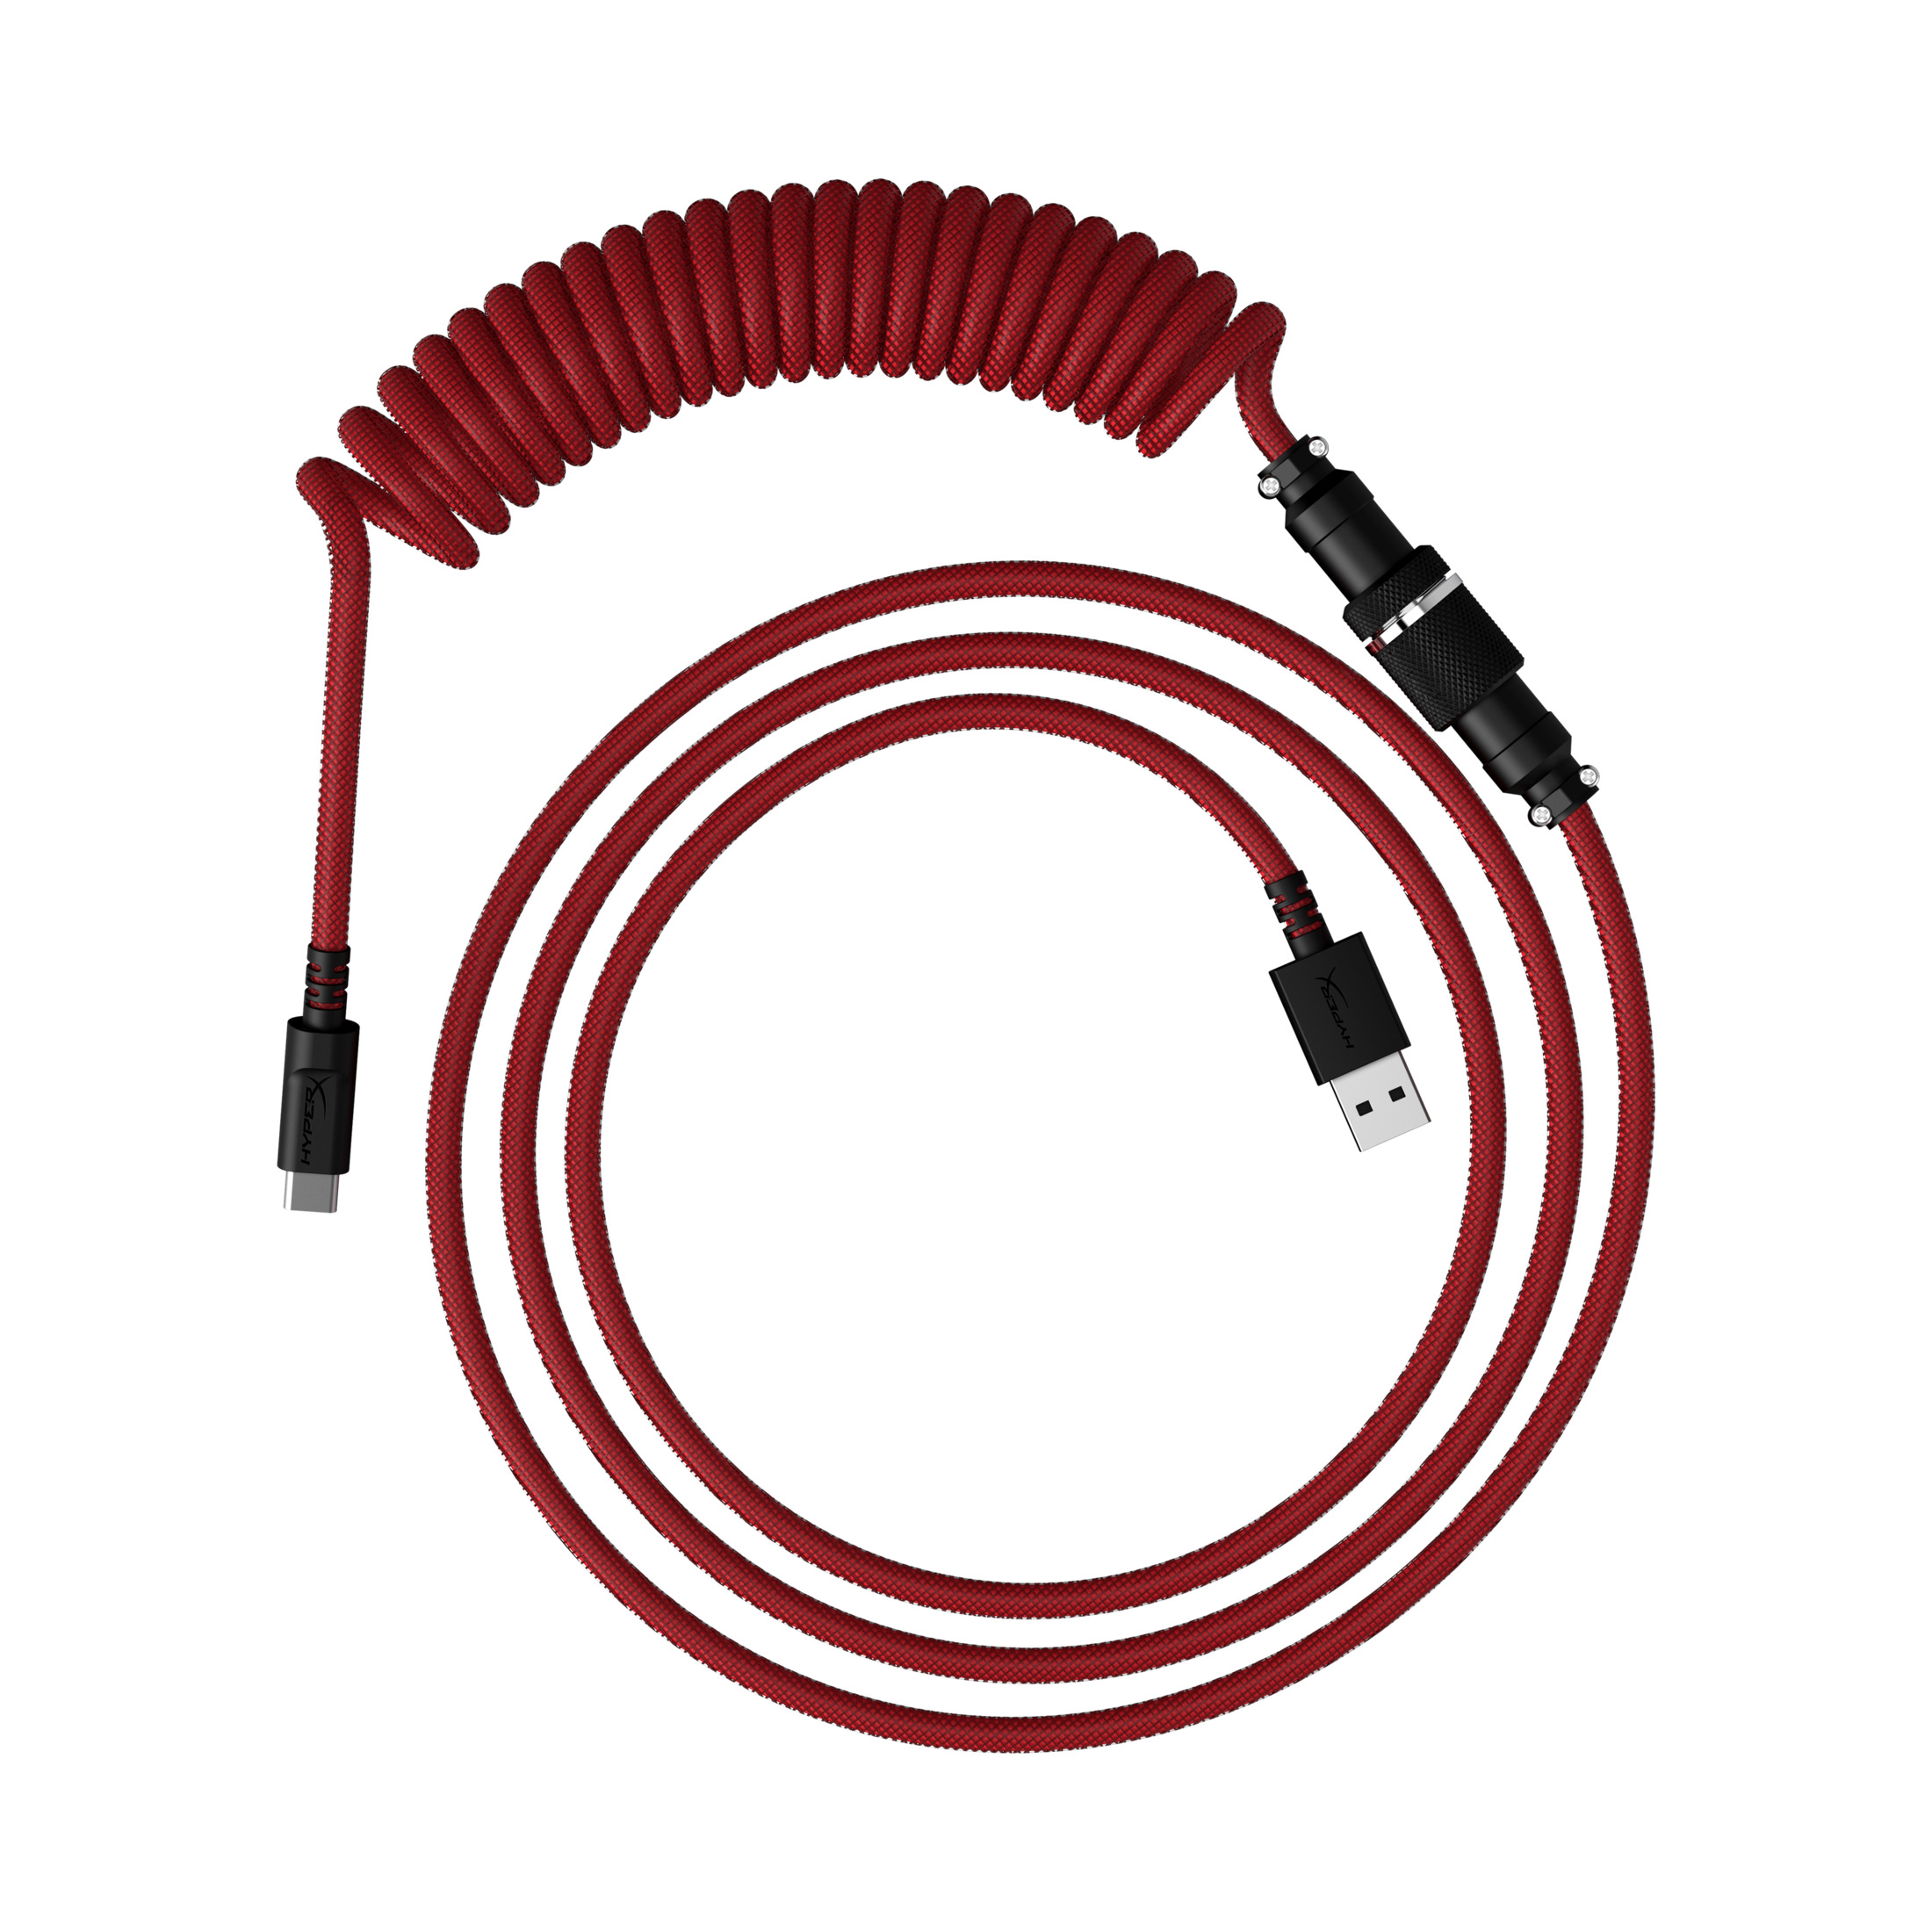 HYPERX 6J677AA USBC COILED Rot-schwarz Spiralkabel RED-BLK, Tastatur, CBL für die